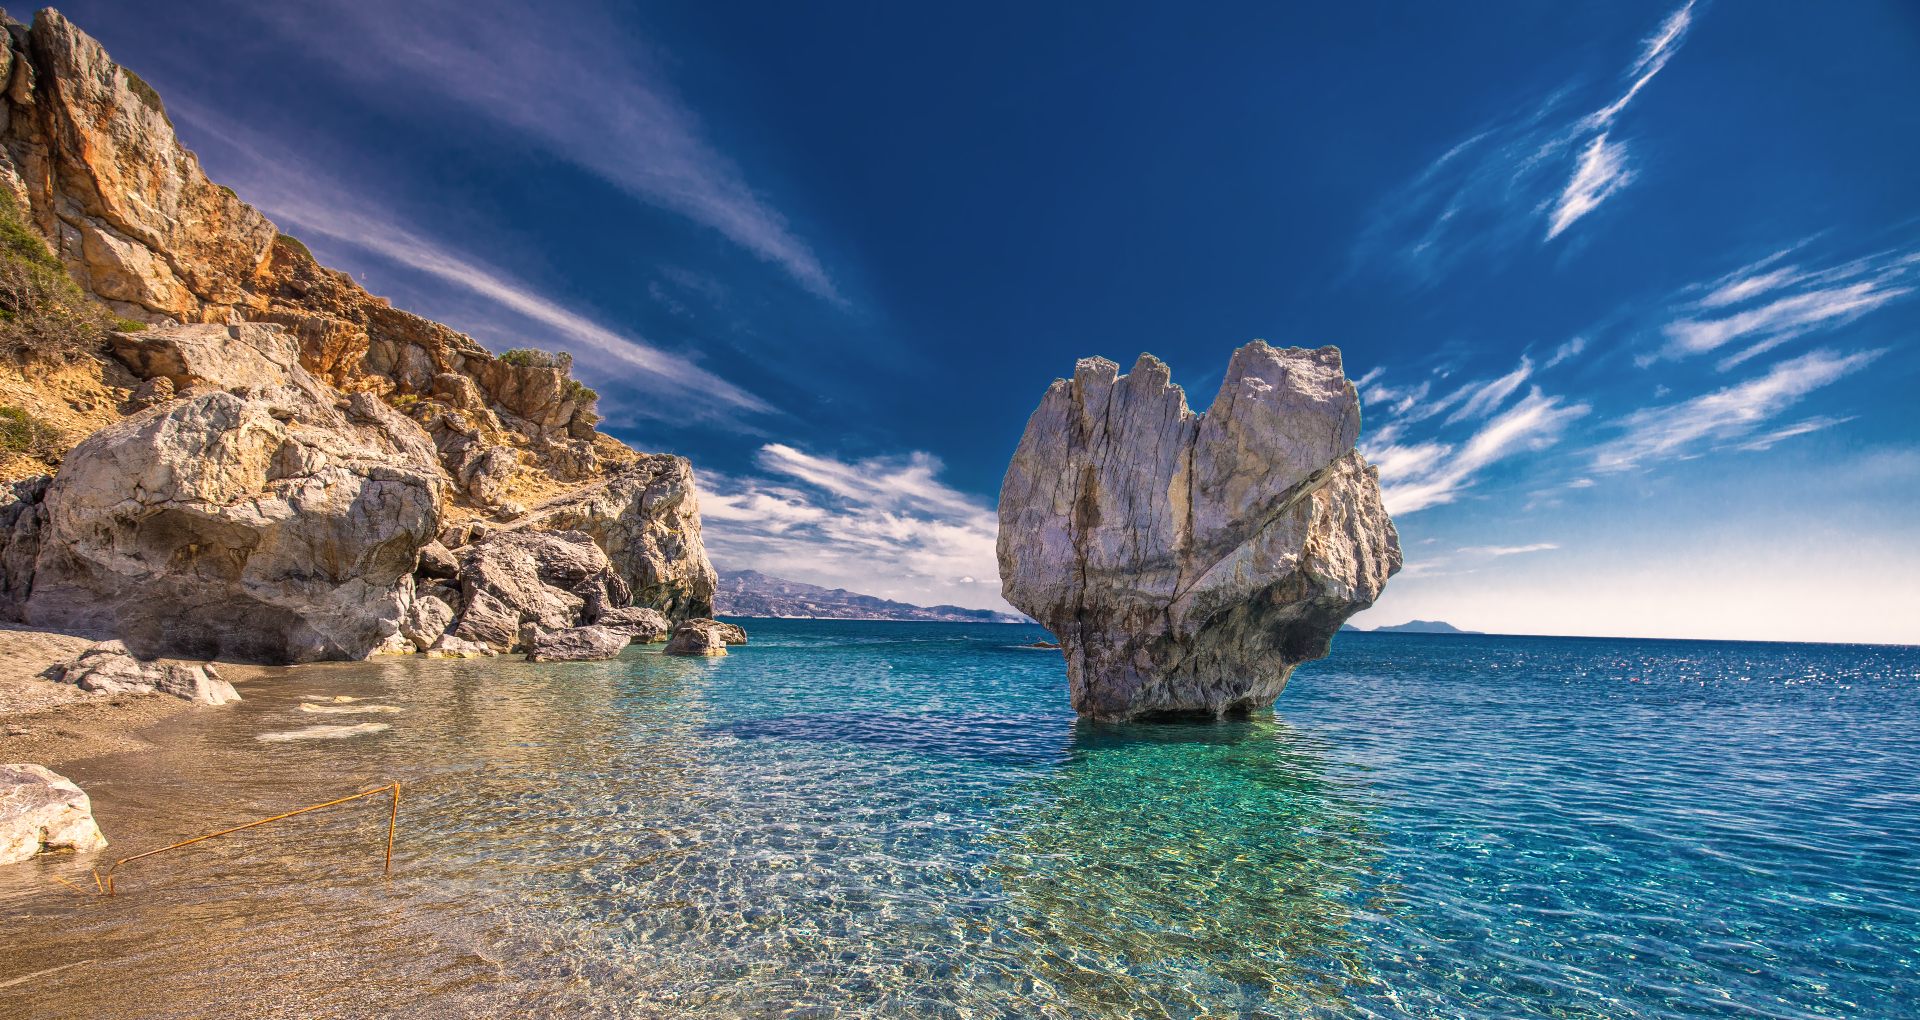 Het strand Preveli met een rots in de zee op Kreta